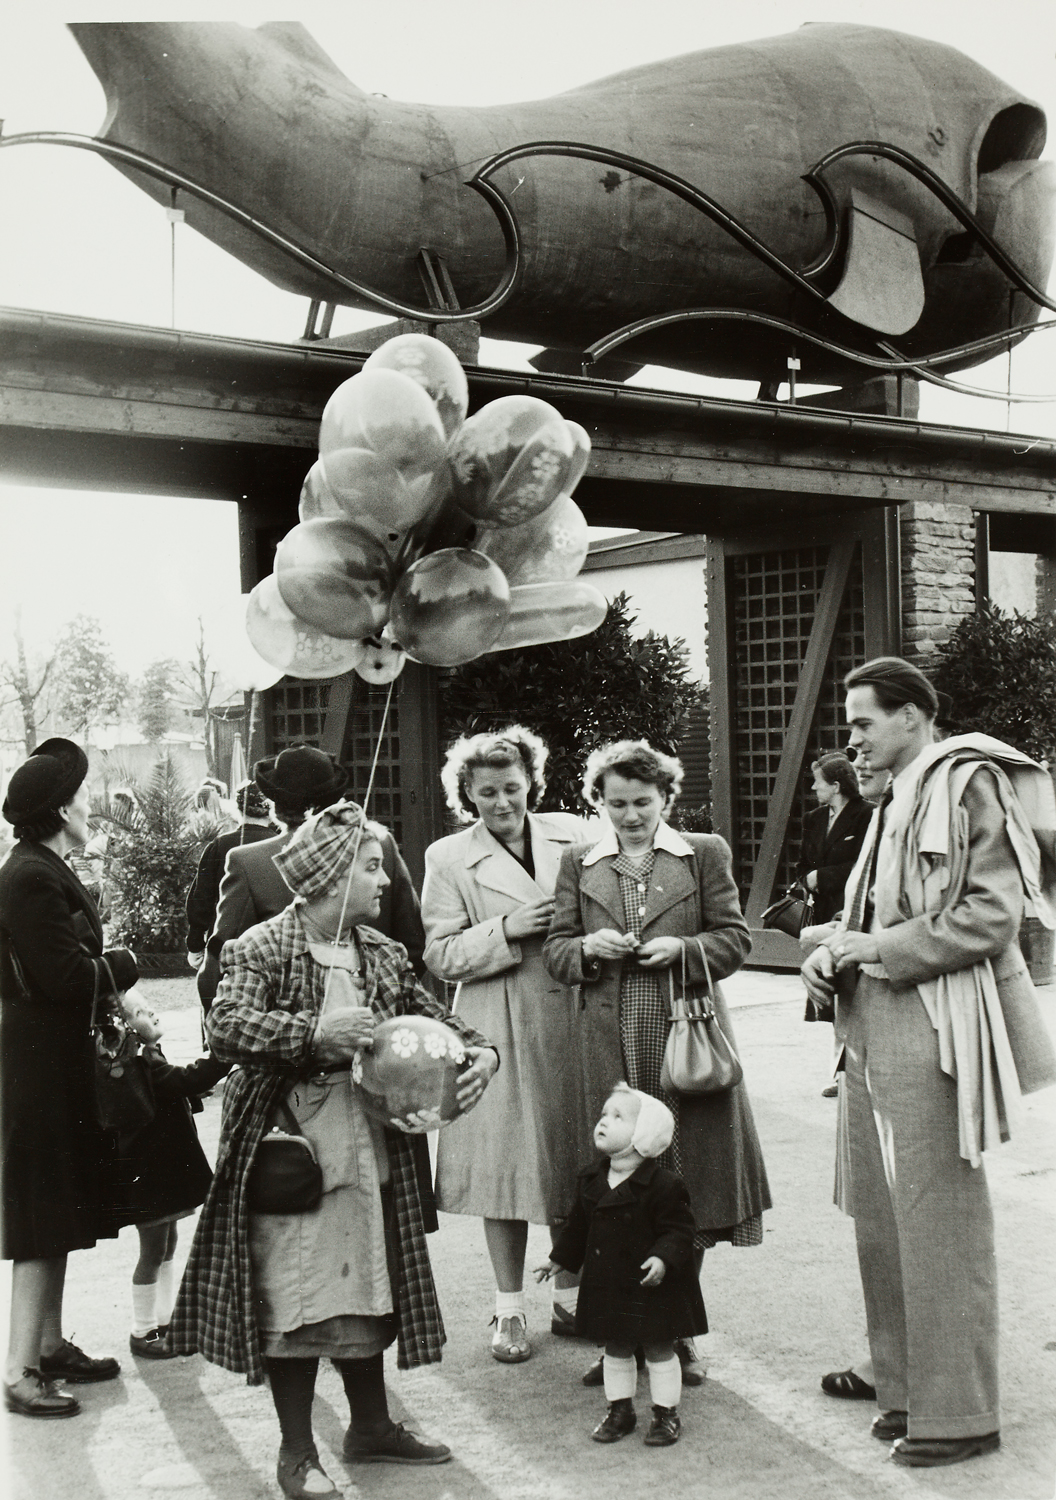 Foto mit Menschen rund um eine Luftballonverkäuferin, vor dem Gasthaus "Zum Walfisch" im Prater 